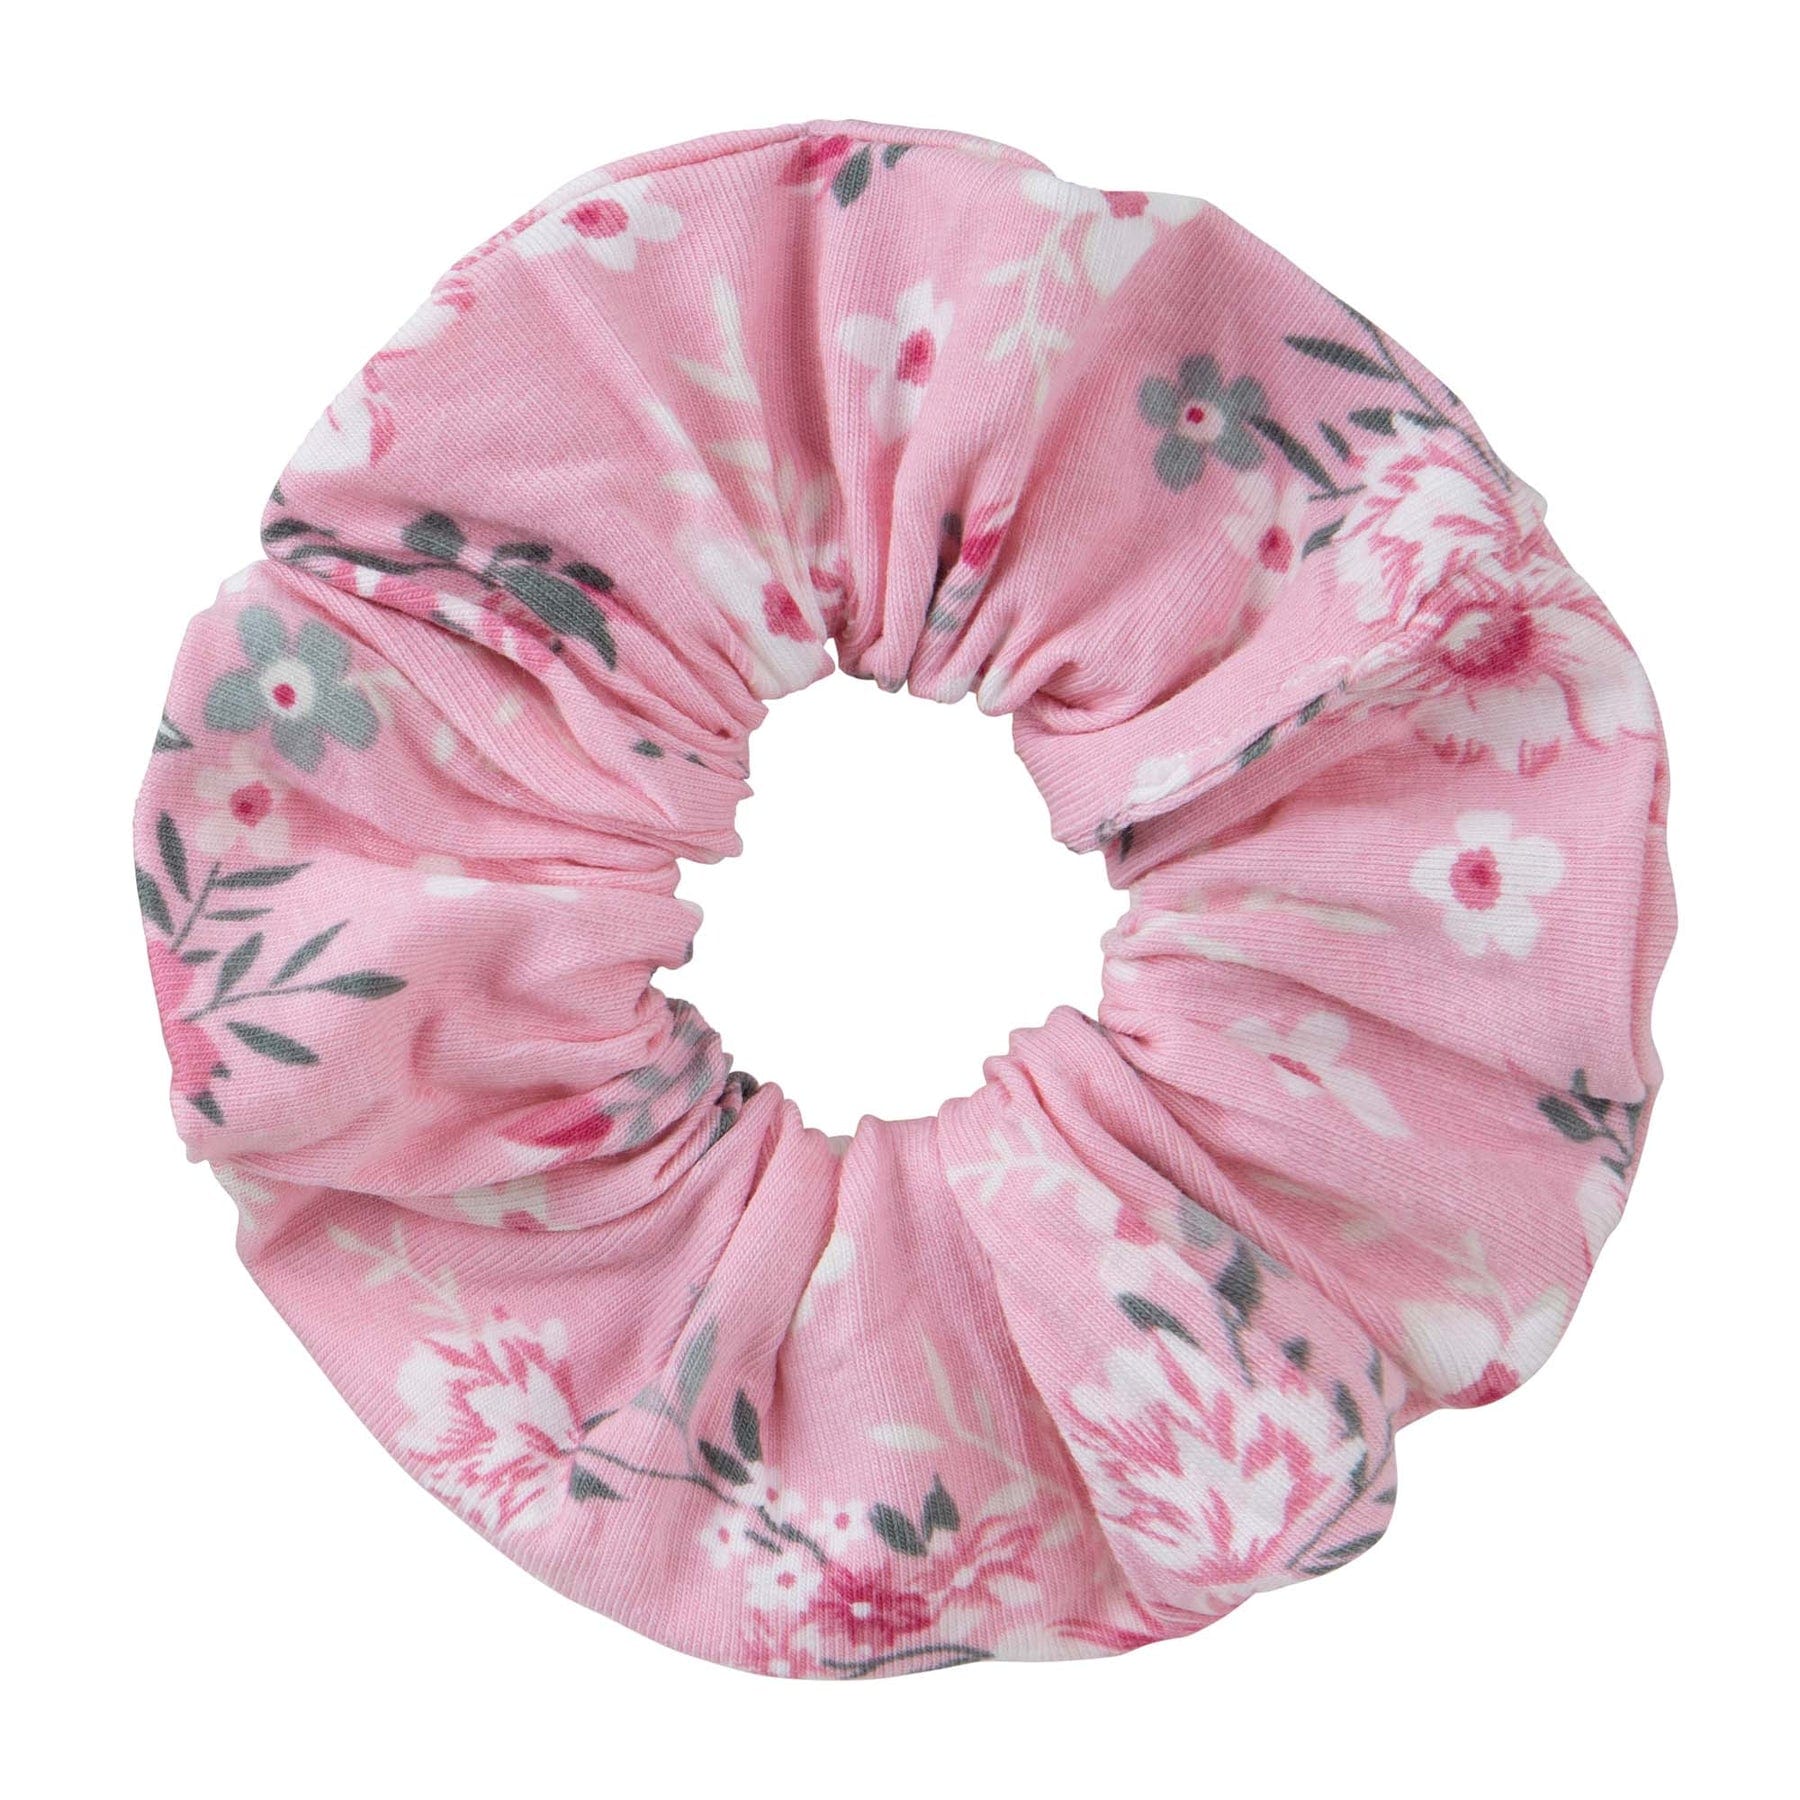 Designer Kidz Accessory Hair Millie Floral Scrunchie - Pink